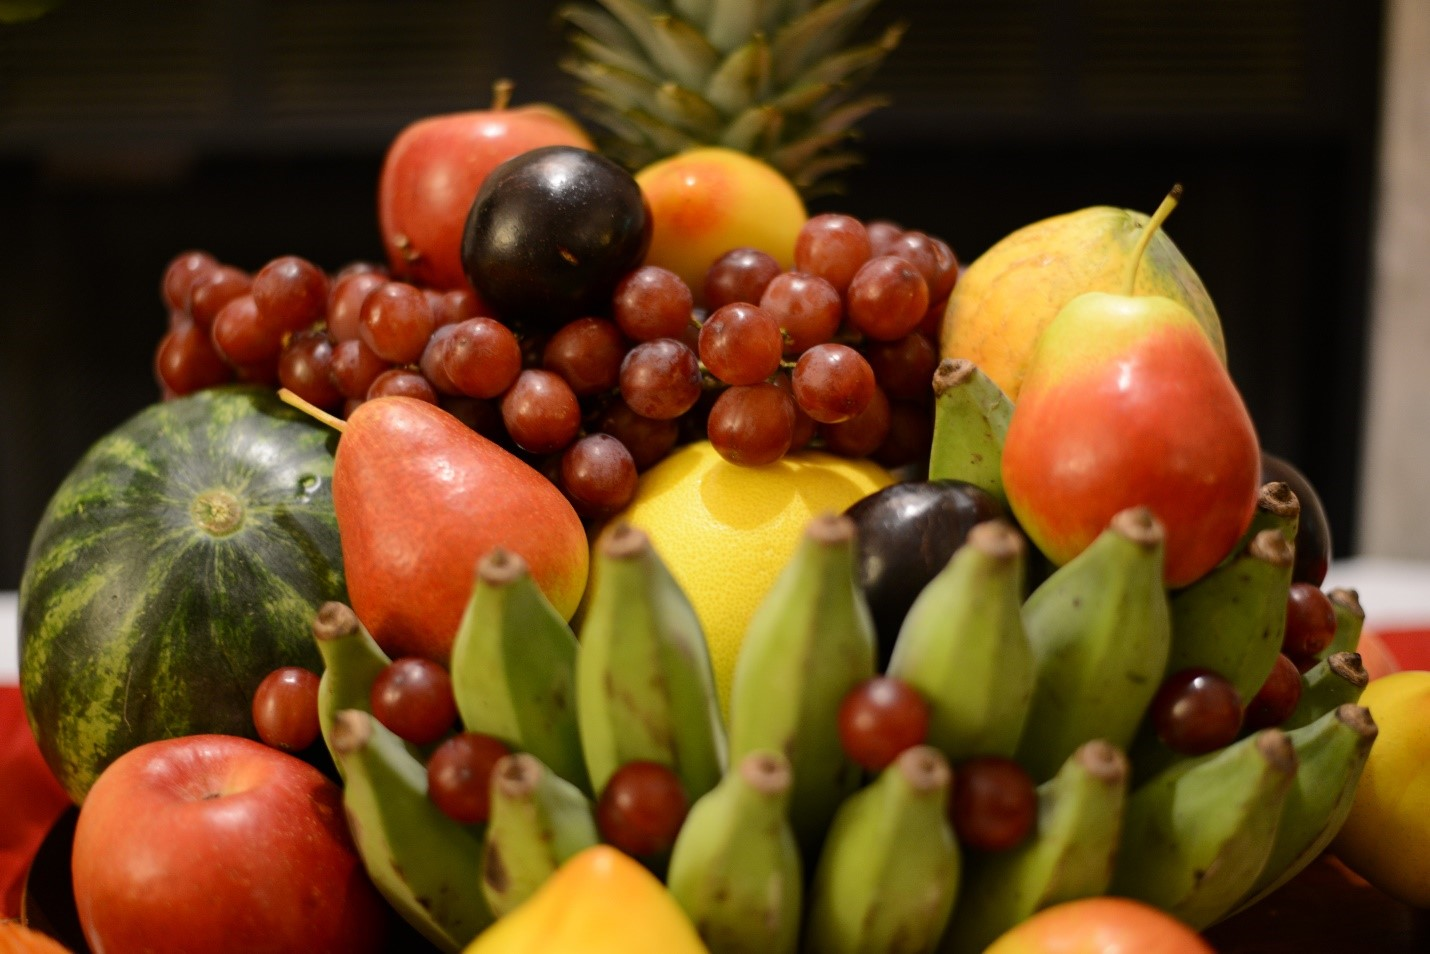 Mâm ngũ quả nên dùng trái cây thật ăn được và bày biện đẹp mắt 